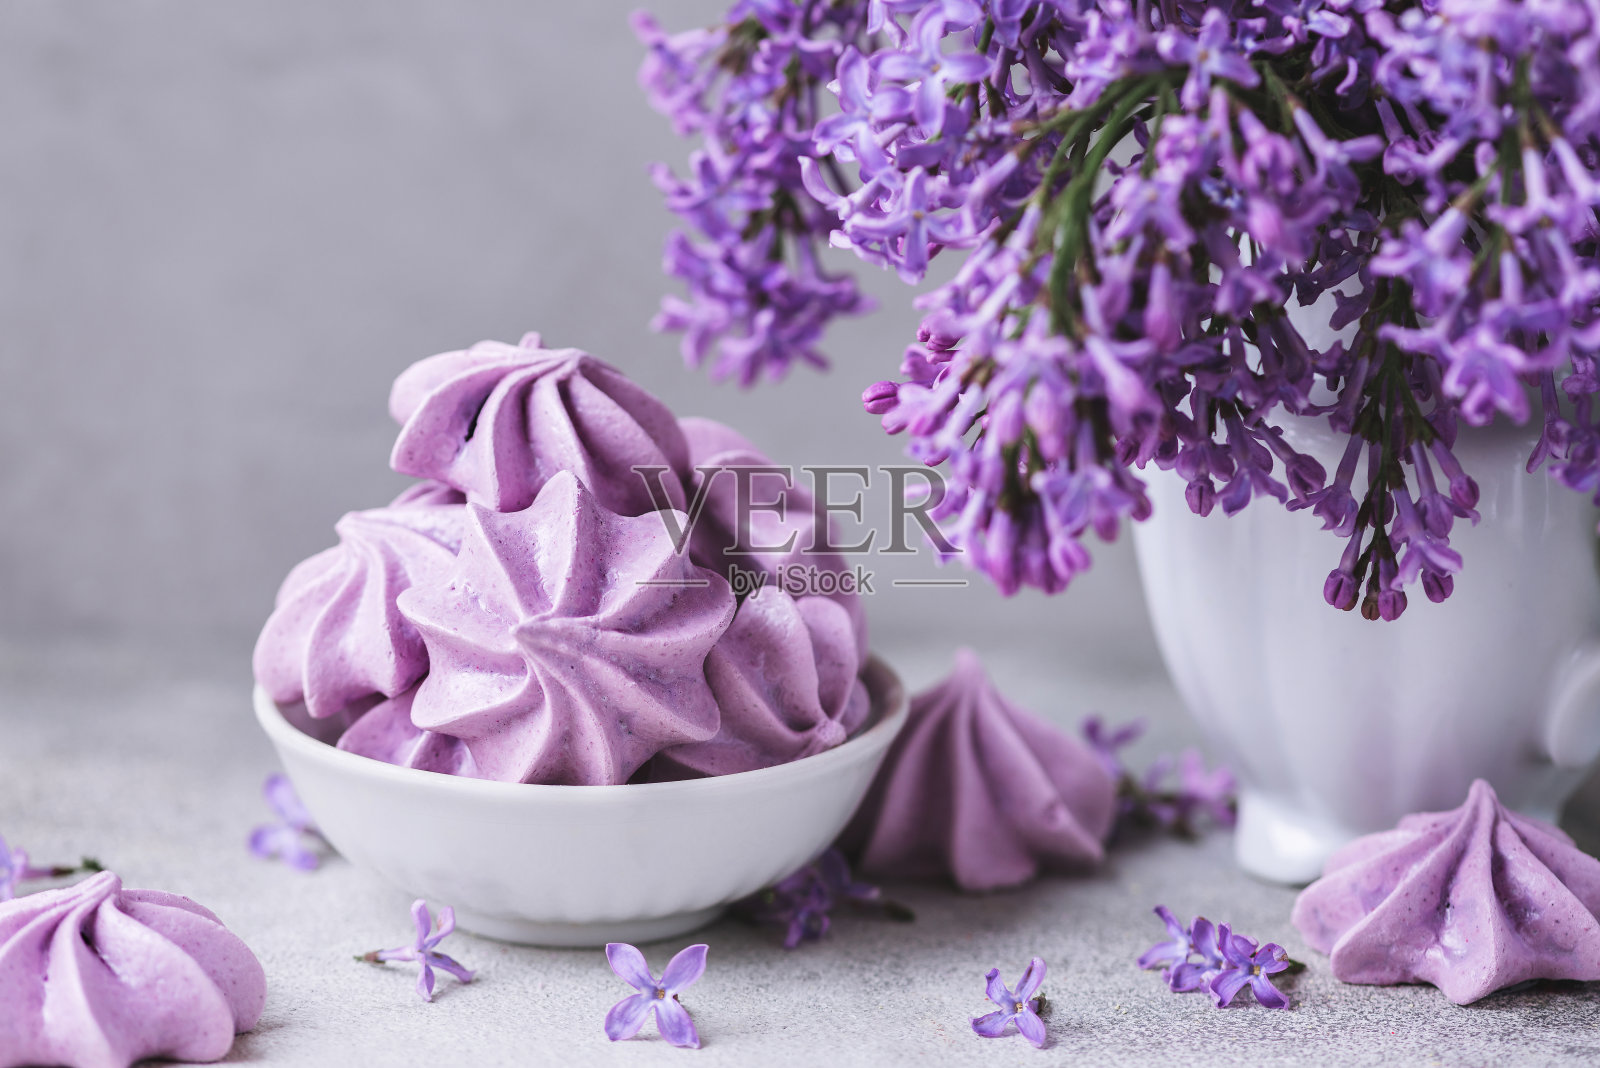 混凝土背景上的花瓶里有紫色的蛋白酥饼和丁香花。复古或instagram色调。静物画照片摄影图片